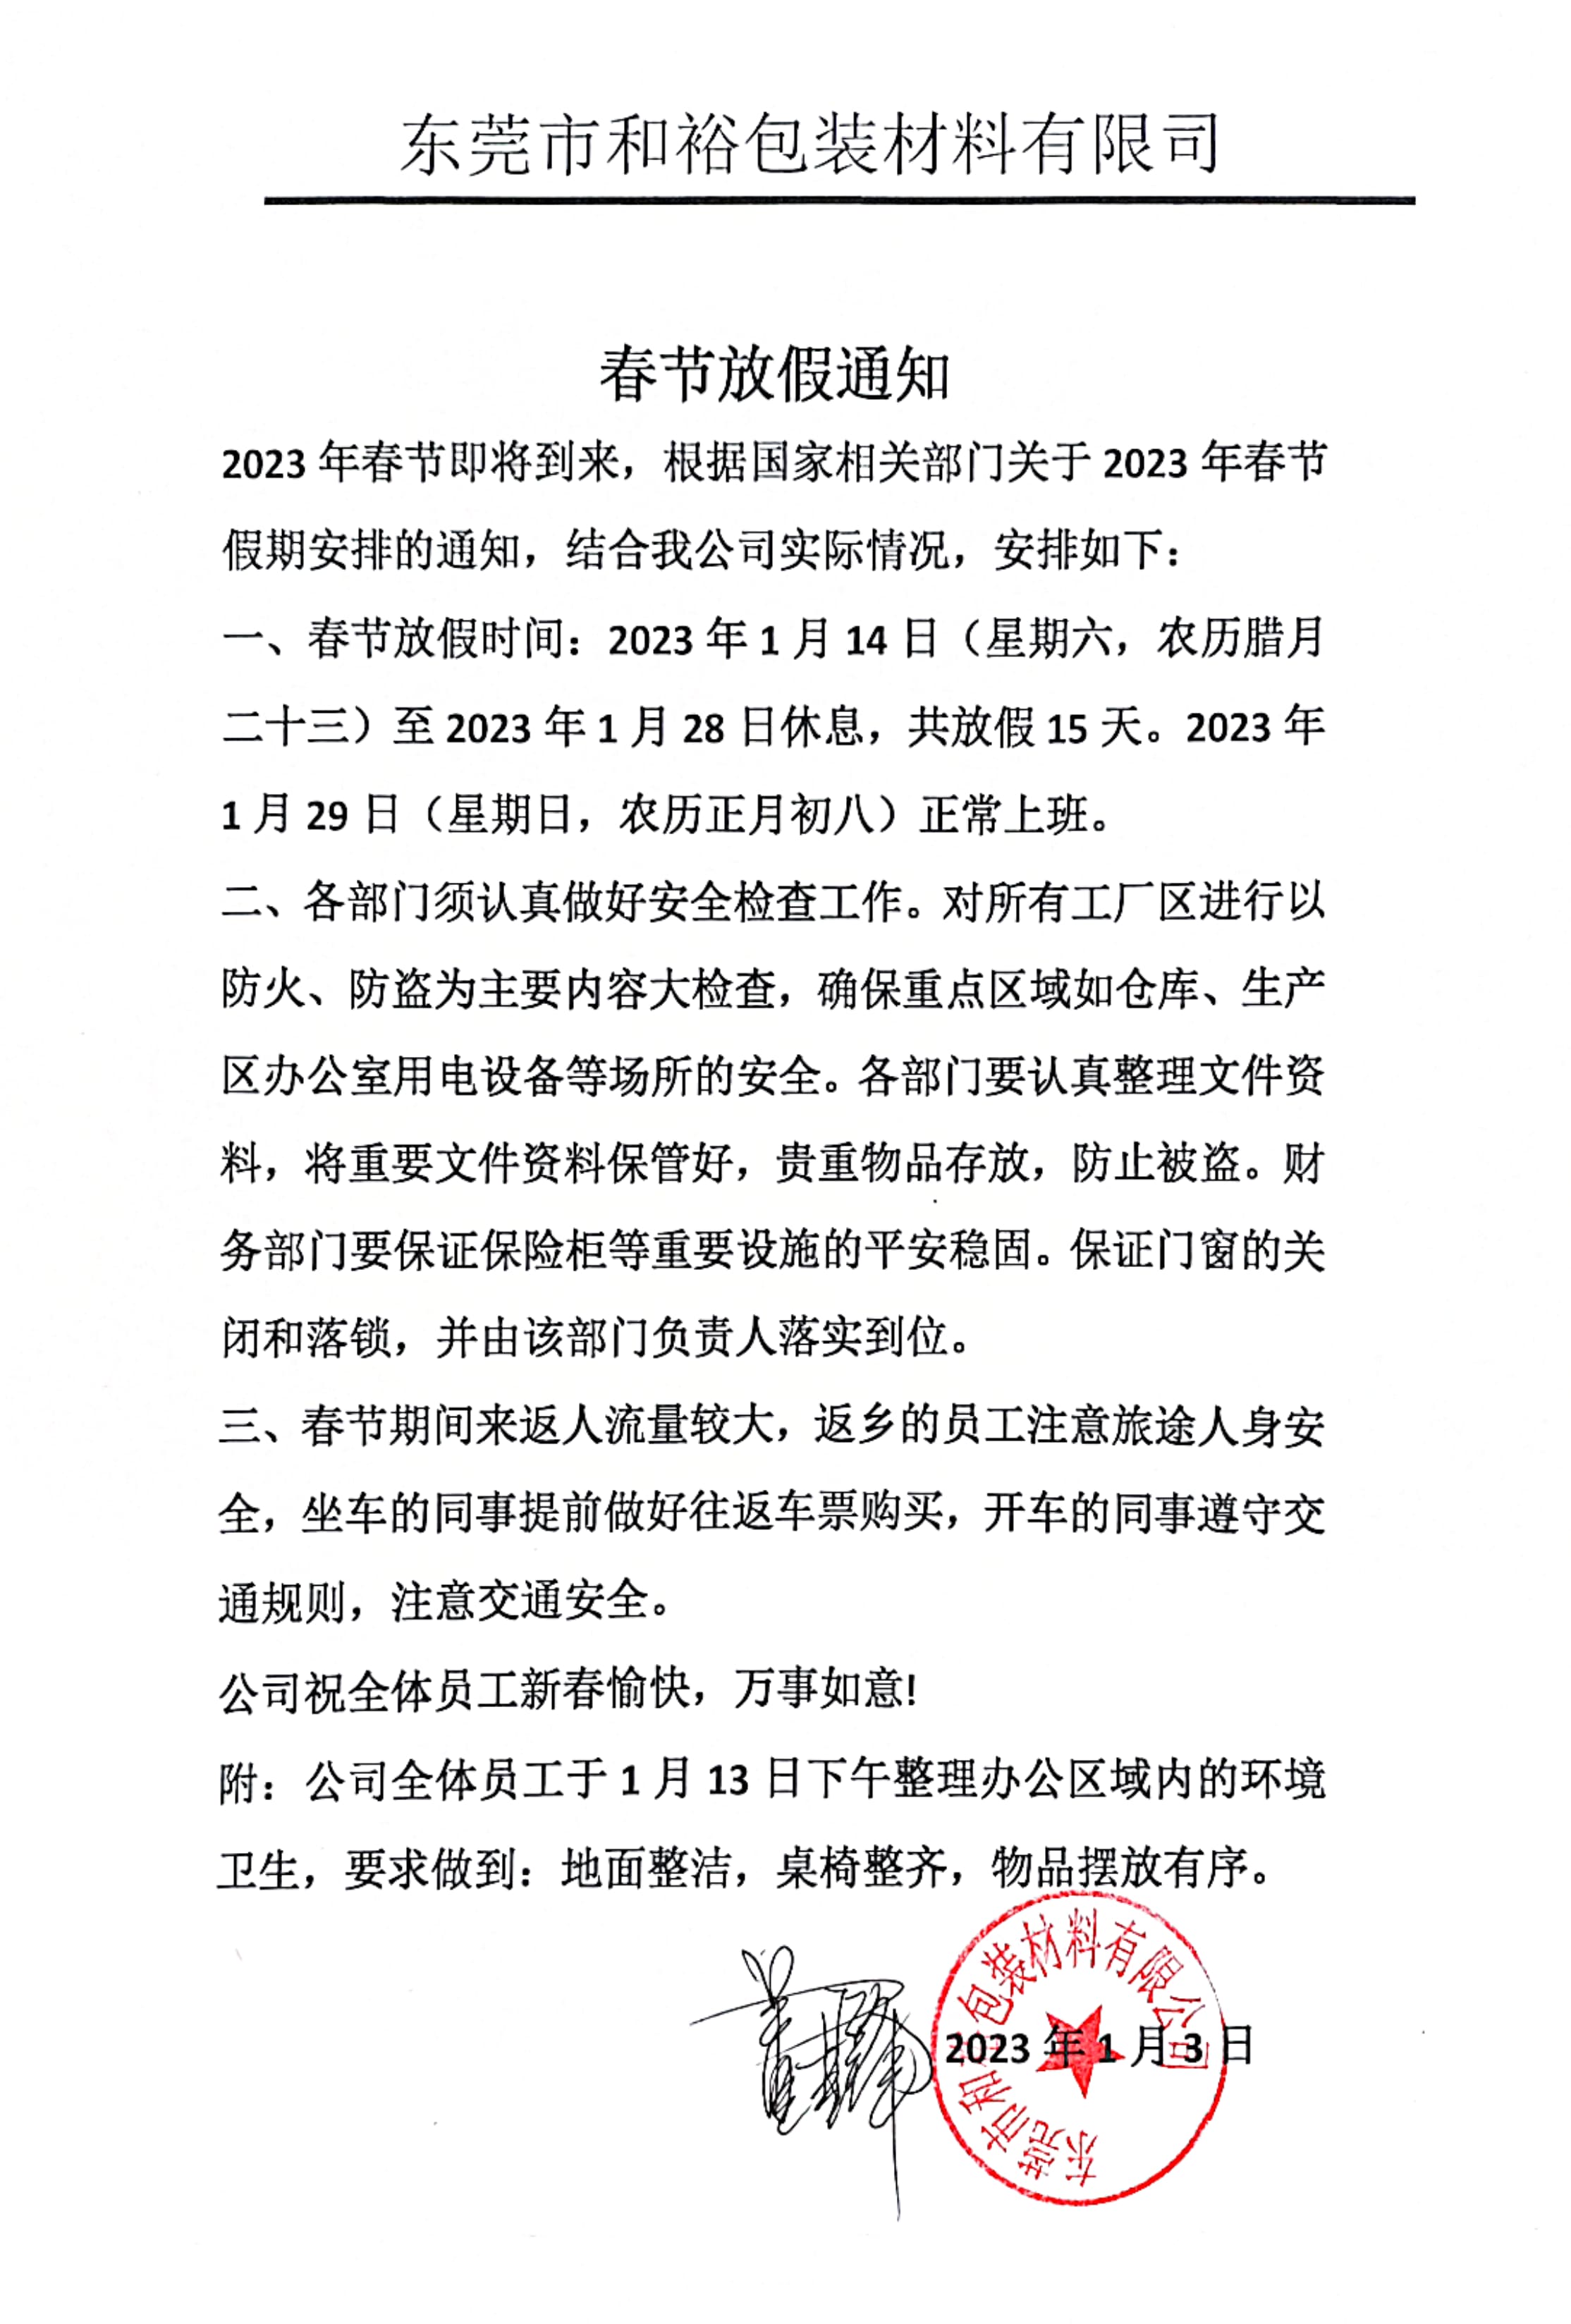 乐东黎族自治县2023年和裕包装春节放假通知